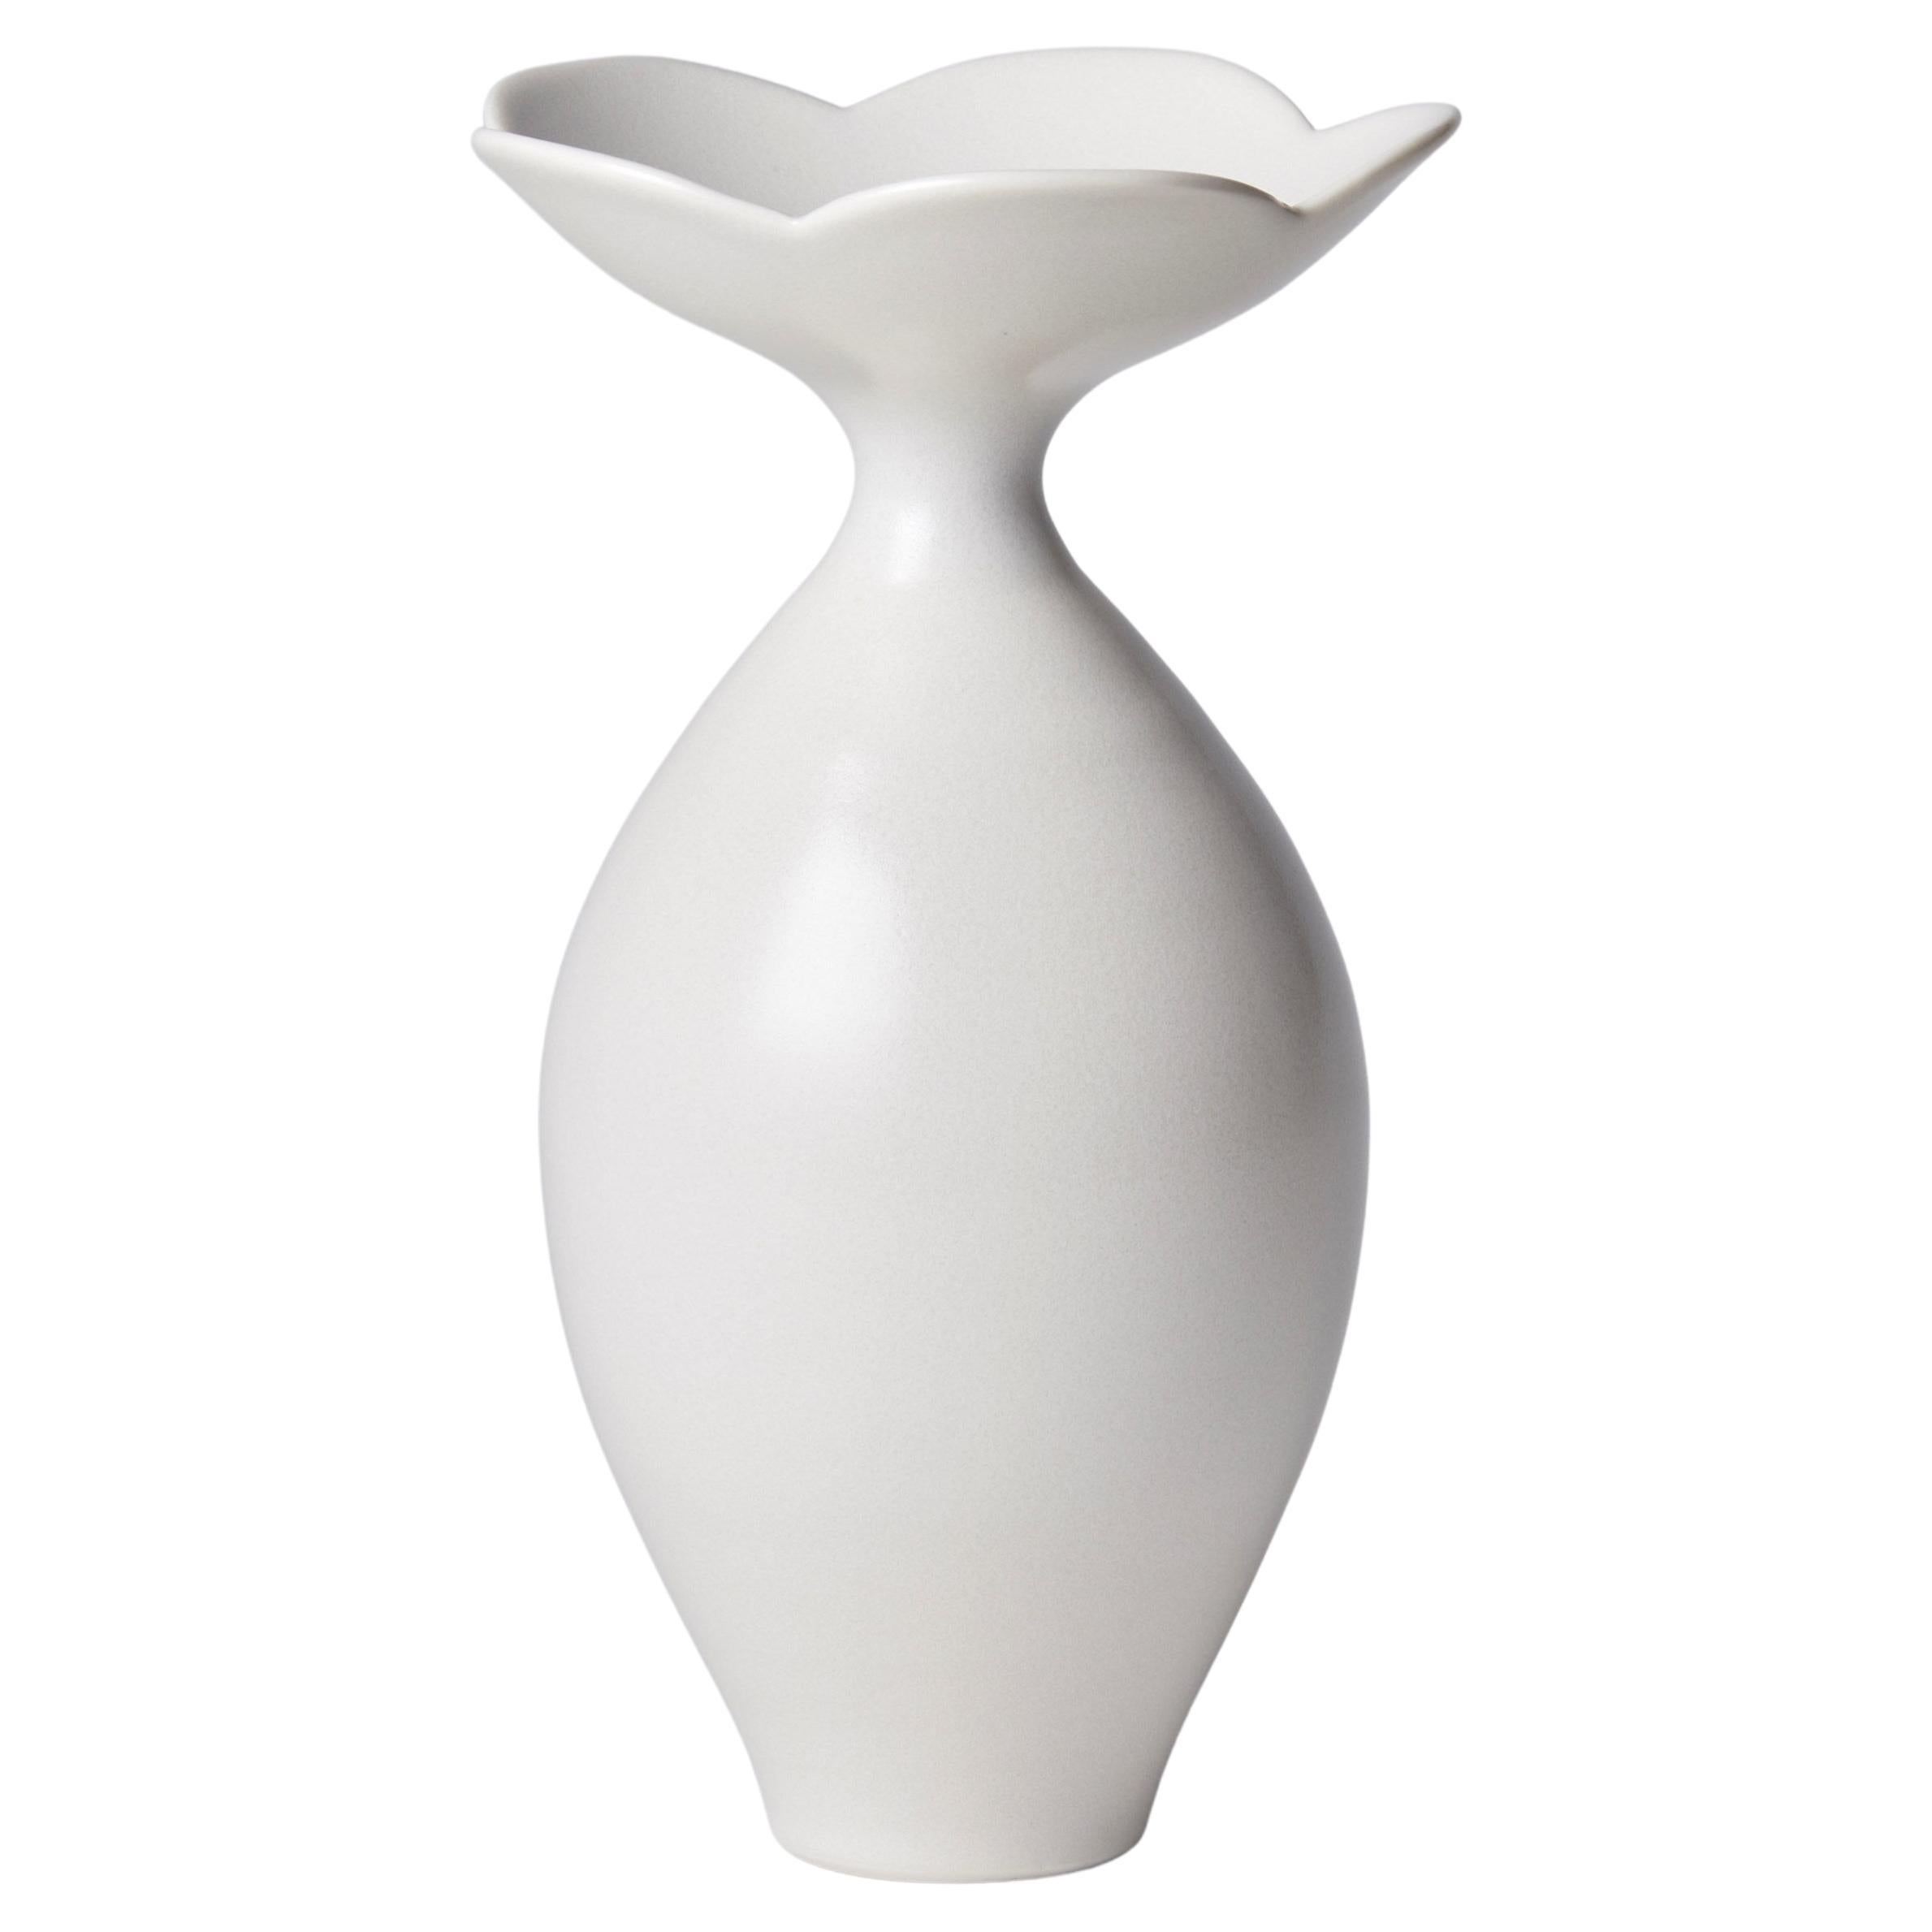 Vase with Foliate Rim I, a Unique White Porcelain Vase by Vivienne Foley